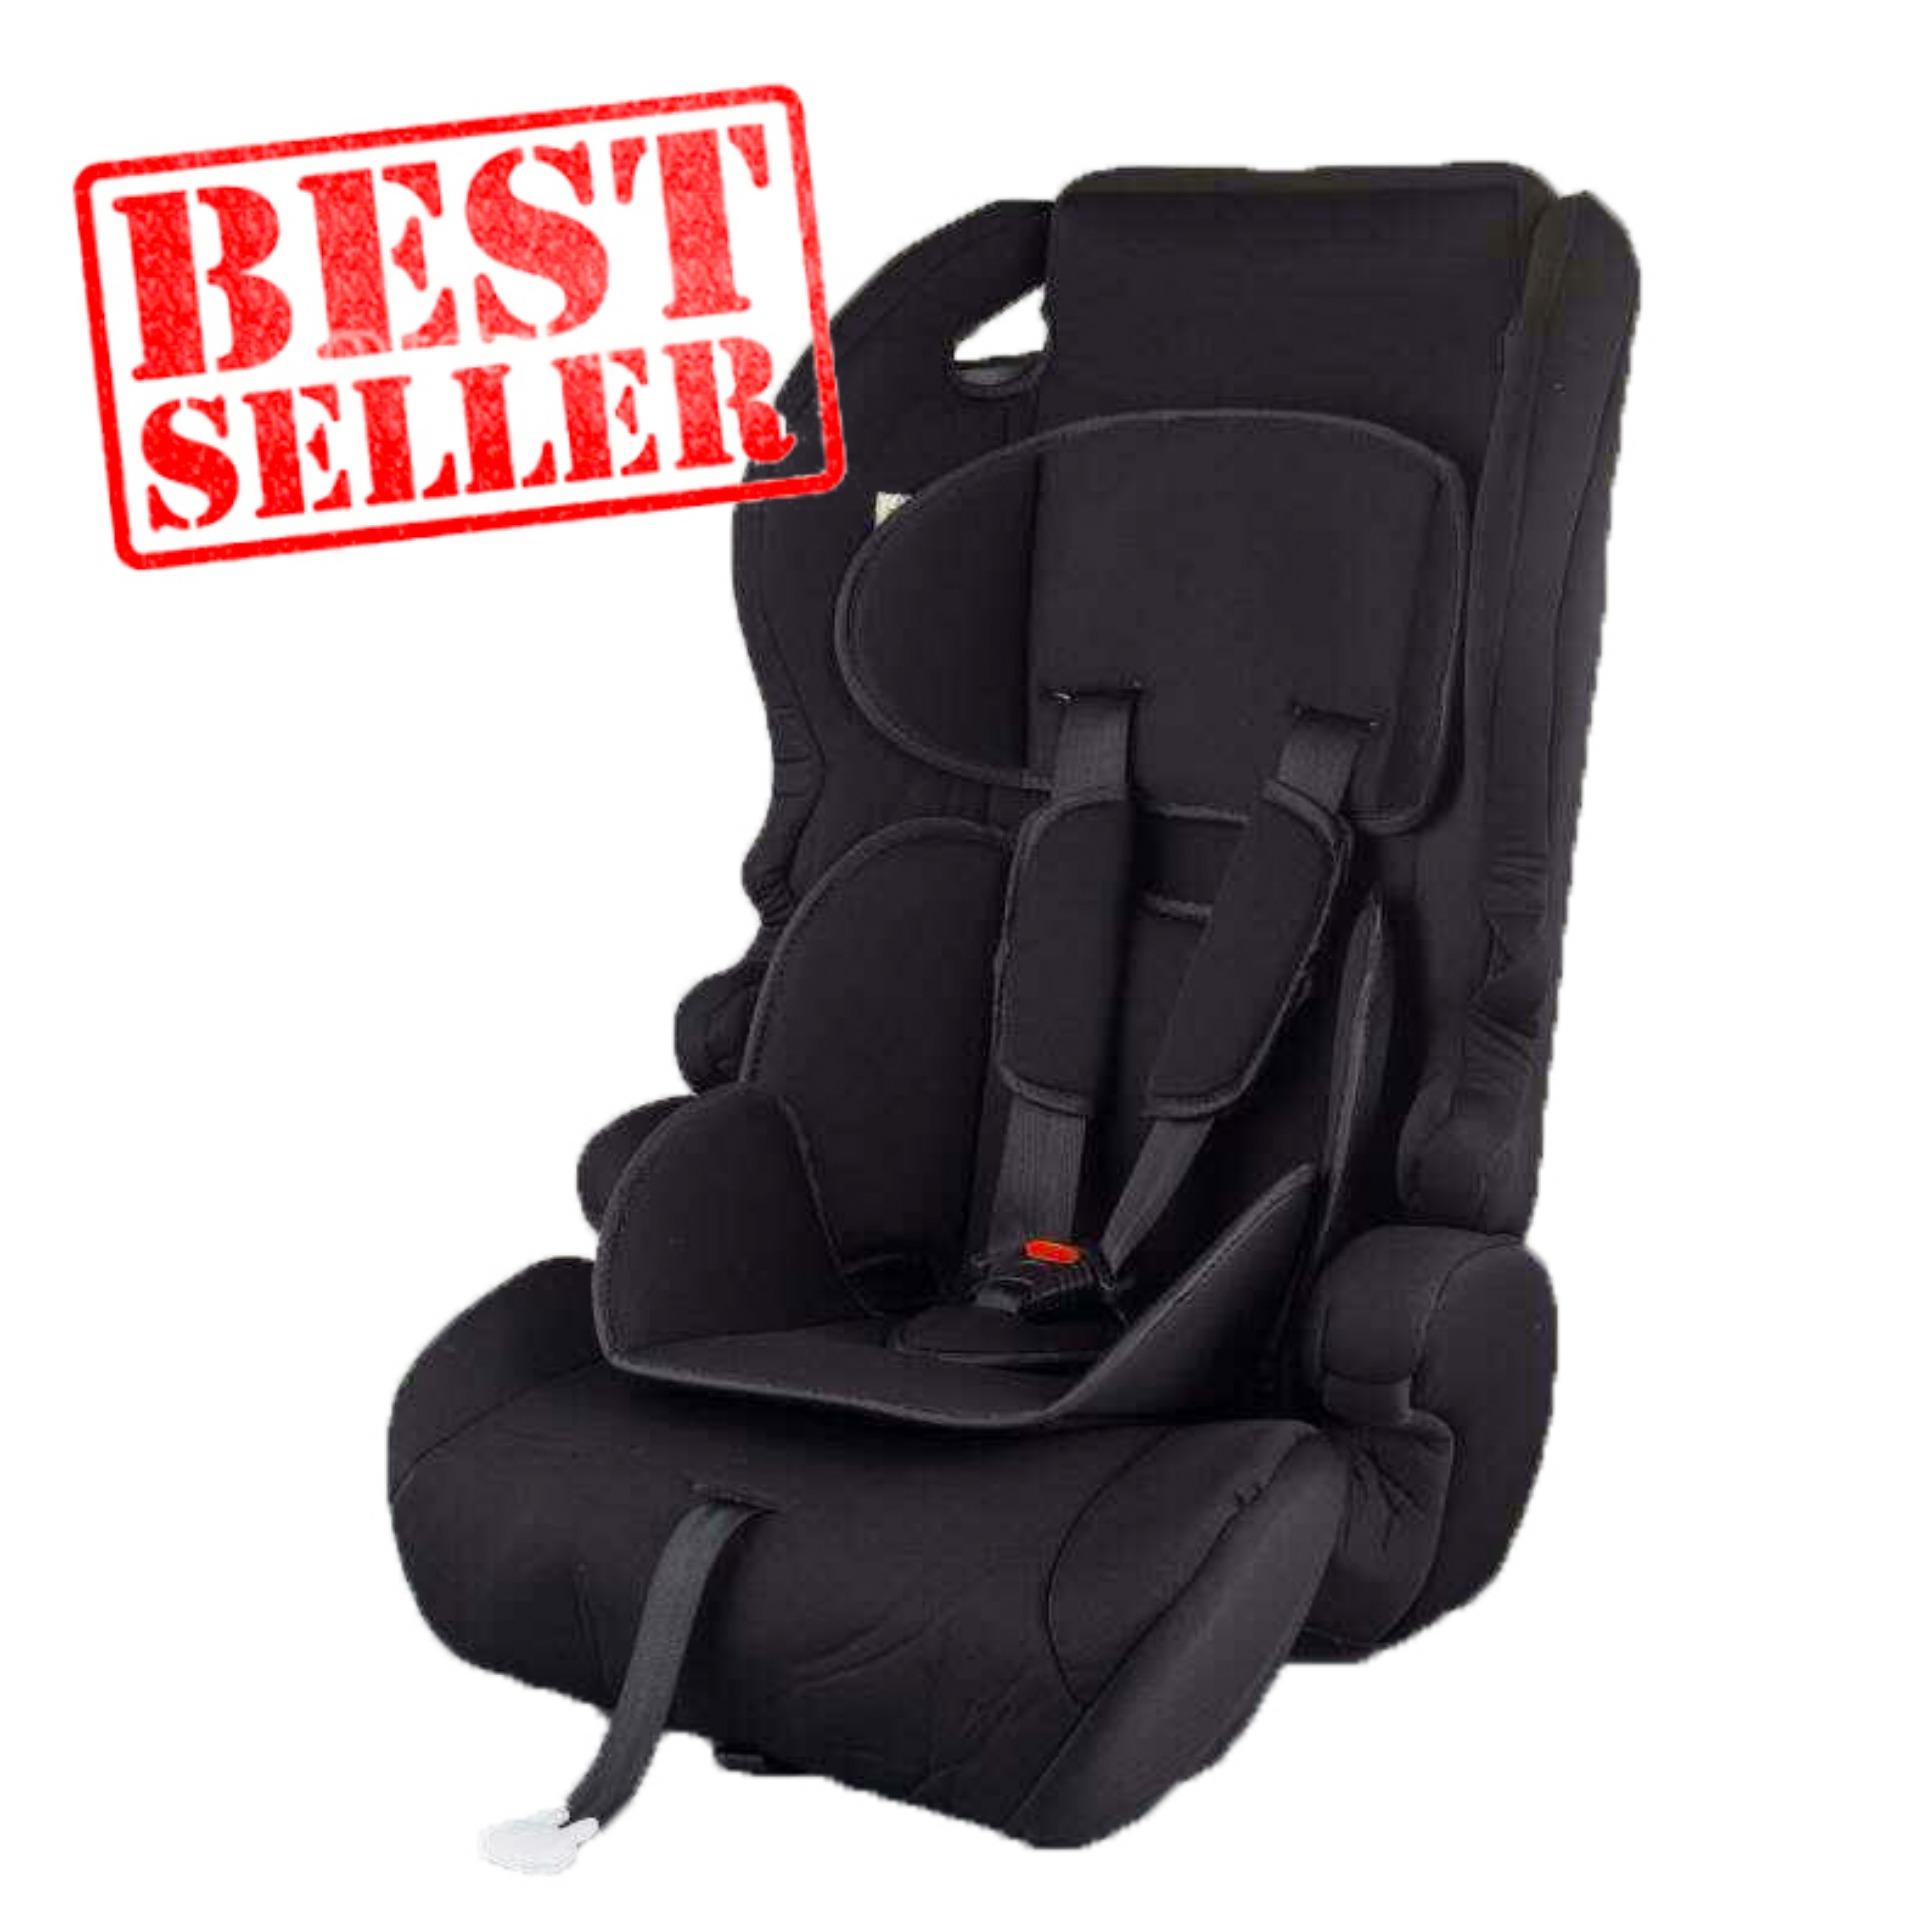 รีวิว Baby boo คาร์ซีท(car seat) เบาะรถยนต์นิรภัยสำหรับเด็กขนาดใหญ่ ตั้งแต่อายุ 9 เดือน ถึง 12 ปี รุ่น： Y7 (สีดำ)